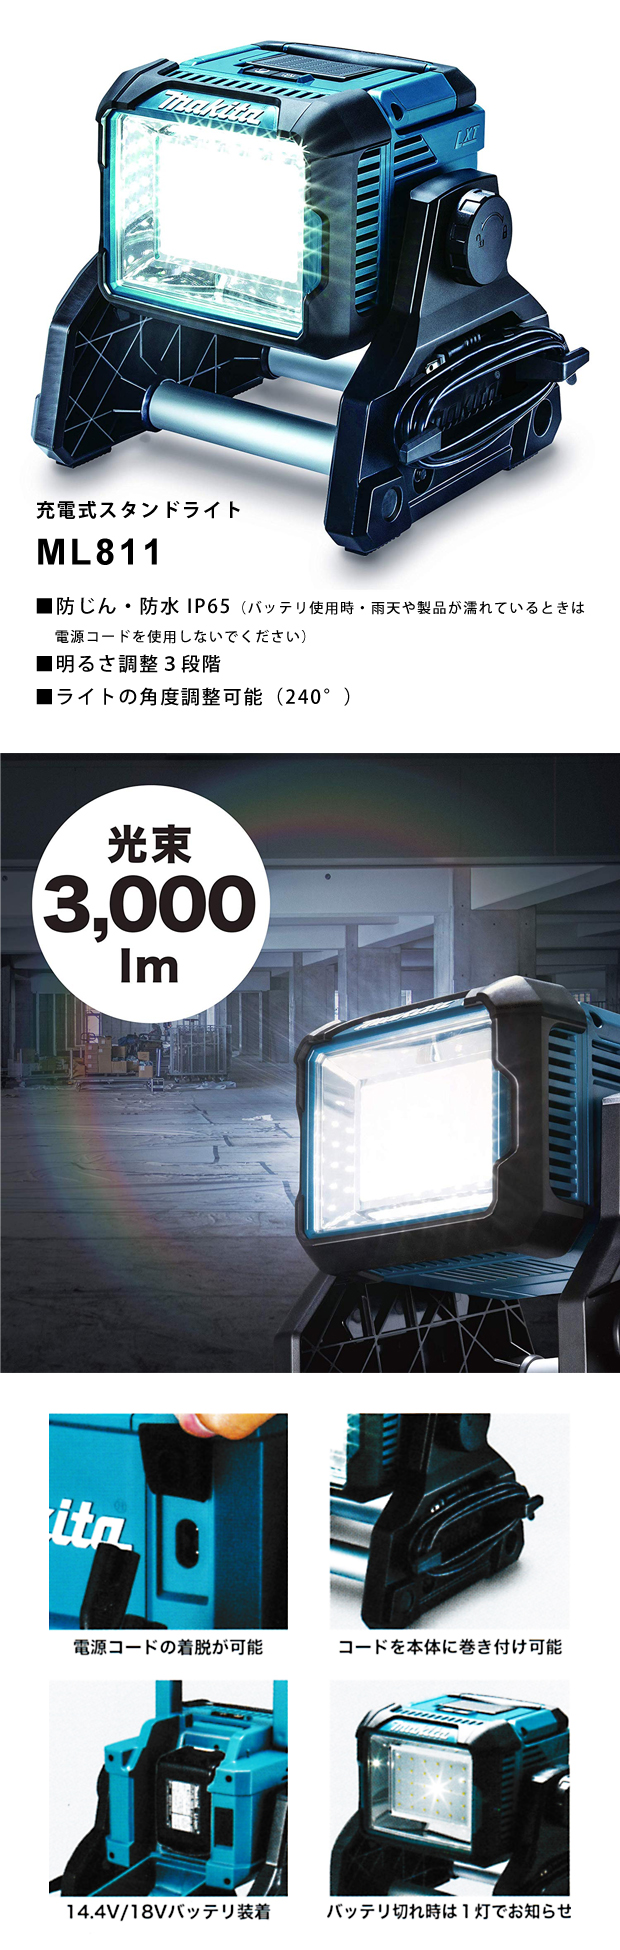 マキタ ML811 充電式LEDスタンドライト(IP65対応 防じん・防水LEDワークライト) 14.4V 18V兼用、AC100V対応(ACアダプタ付属・本体のみ) コードレス ◆ - 1